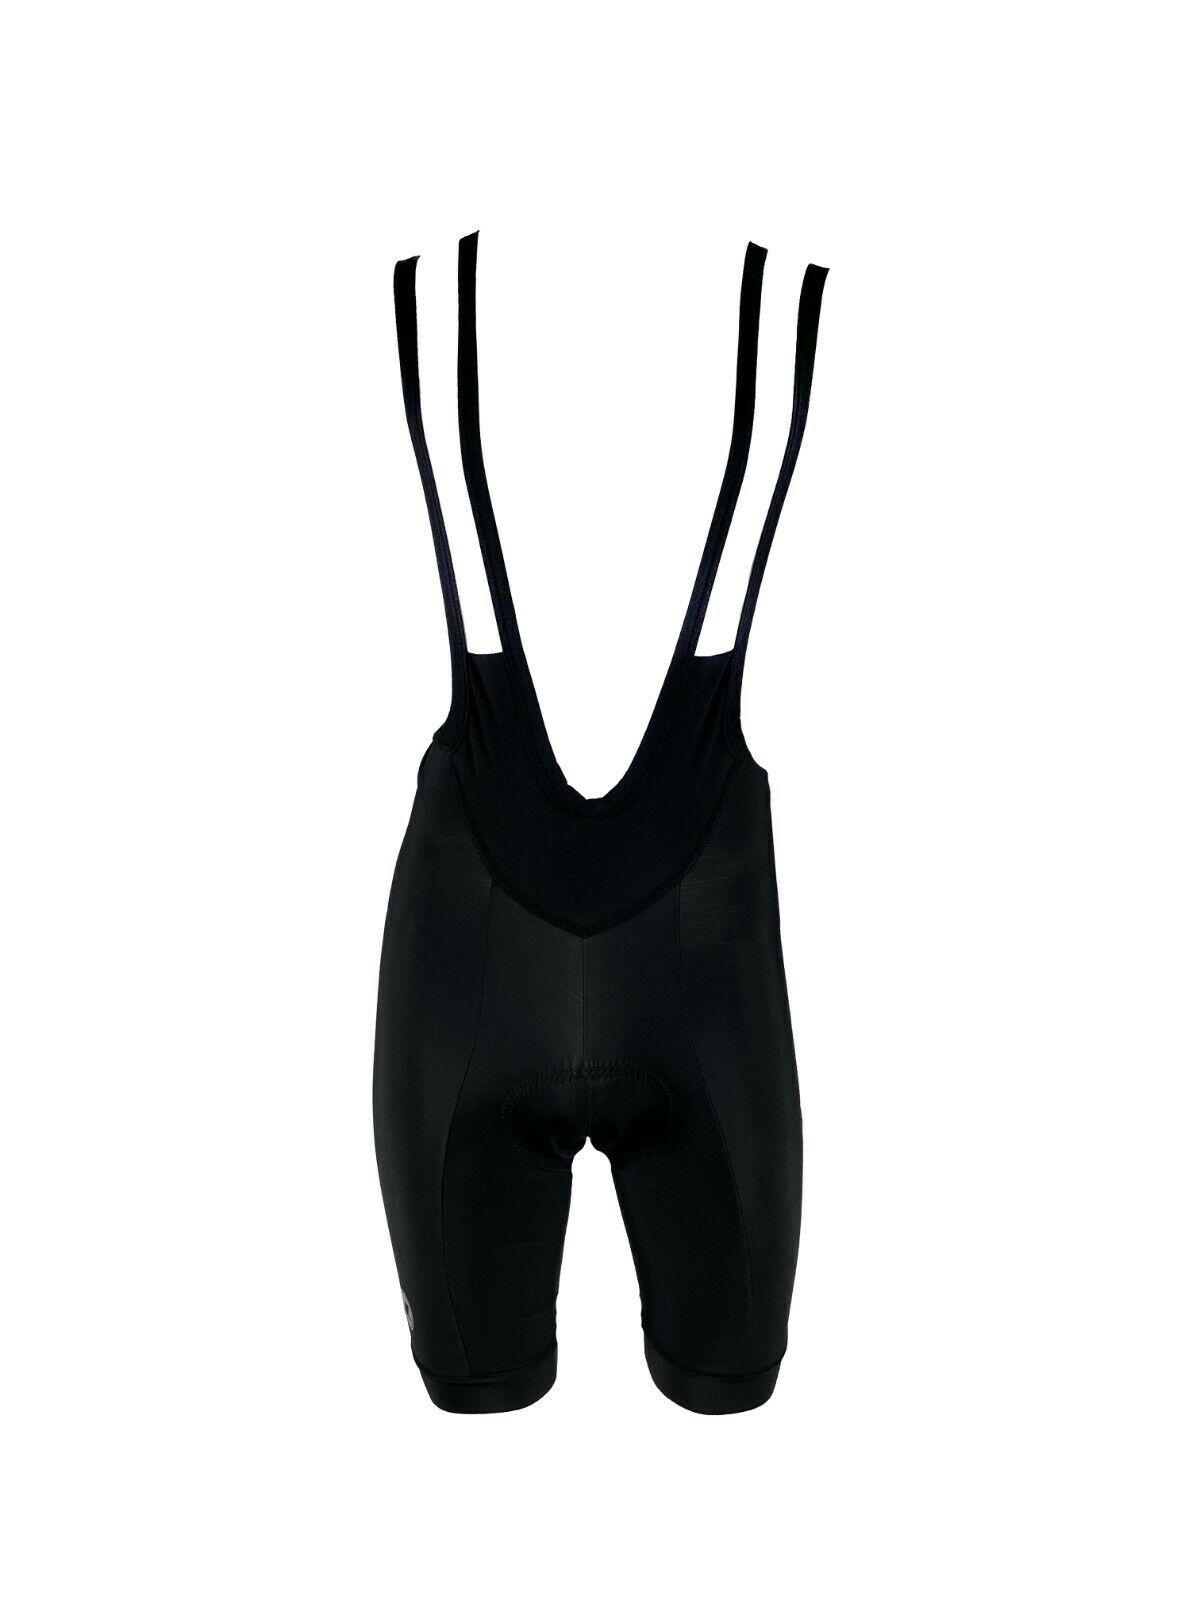 Lusso Hacienda Bib Shorts - Black - Sportandleisure.com (7501621264641)